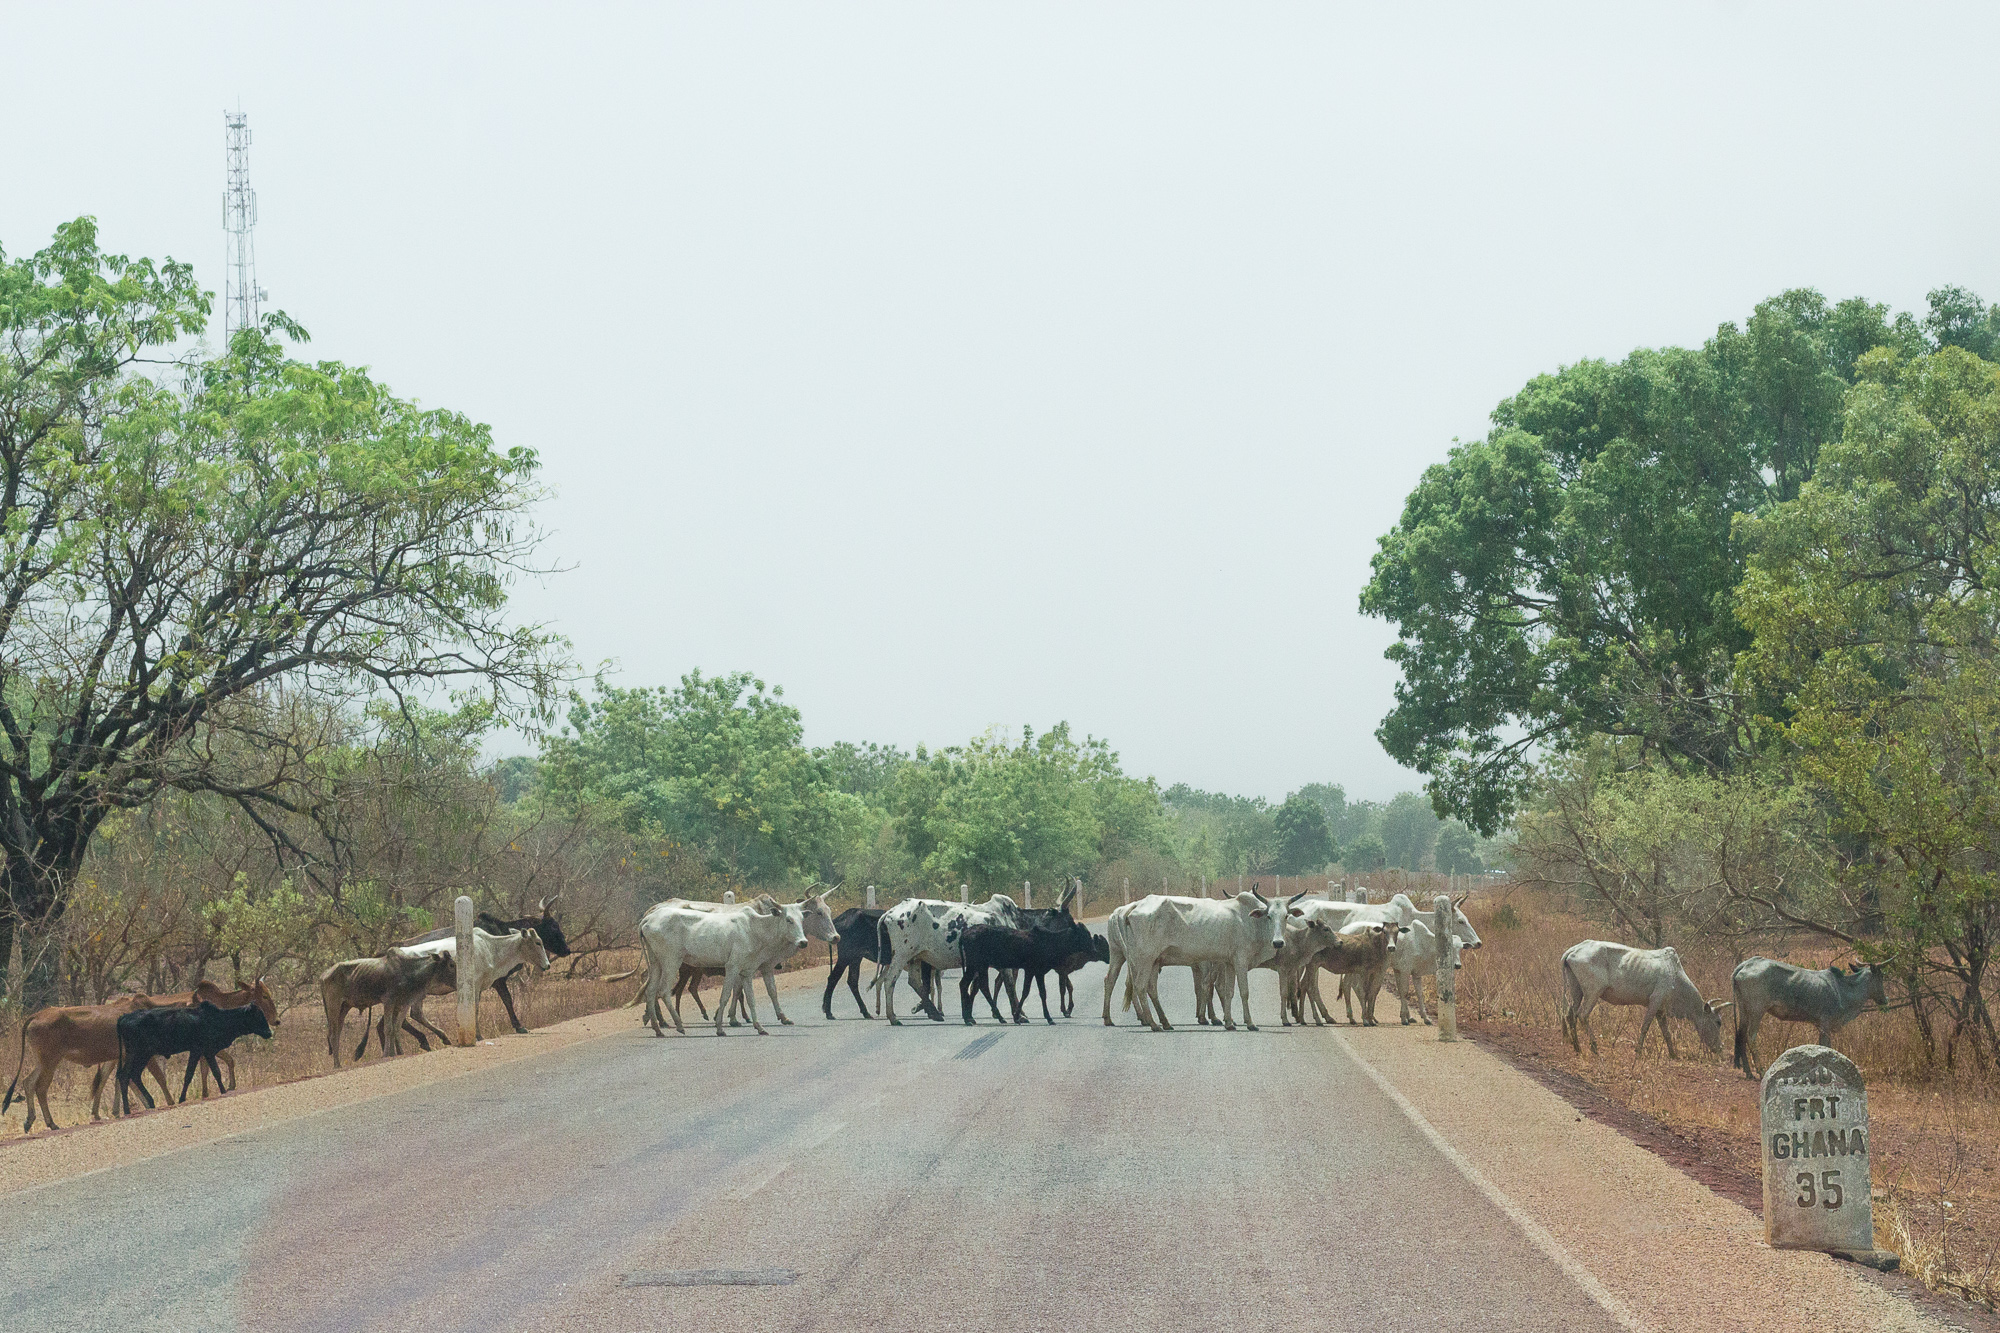 Traversée d'un troupeau de zébus sur la route du Ghana, Burkina Faso